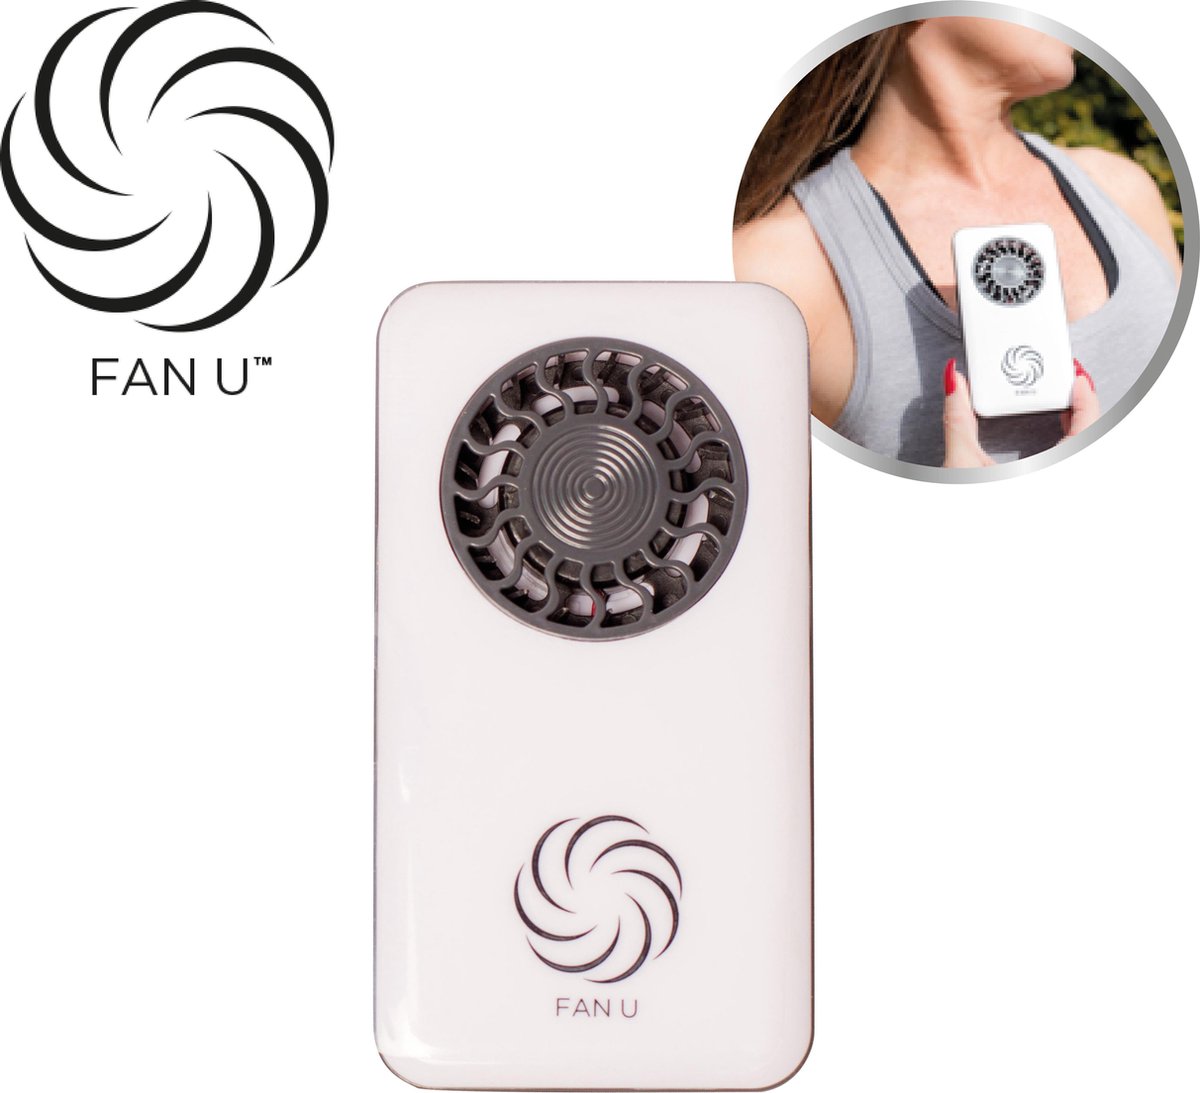 FanU, wit handventilator voor verkoeling op elk moment – mini ventilator, USB-ventilator